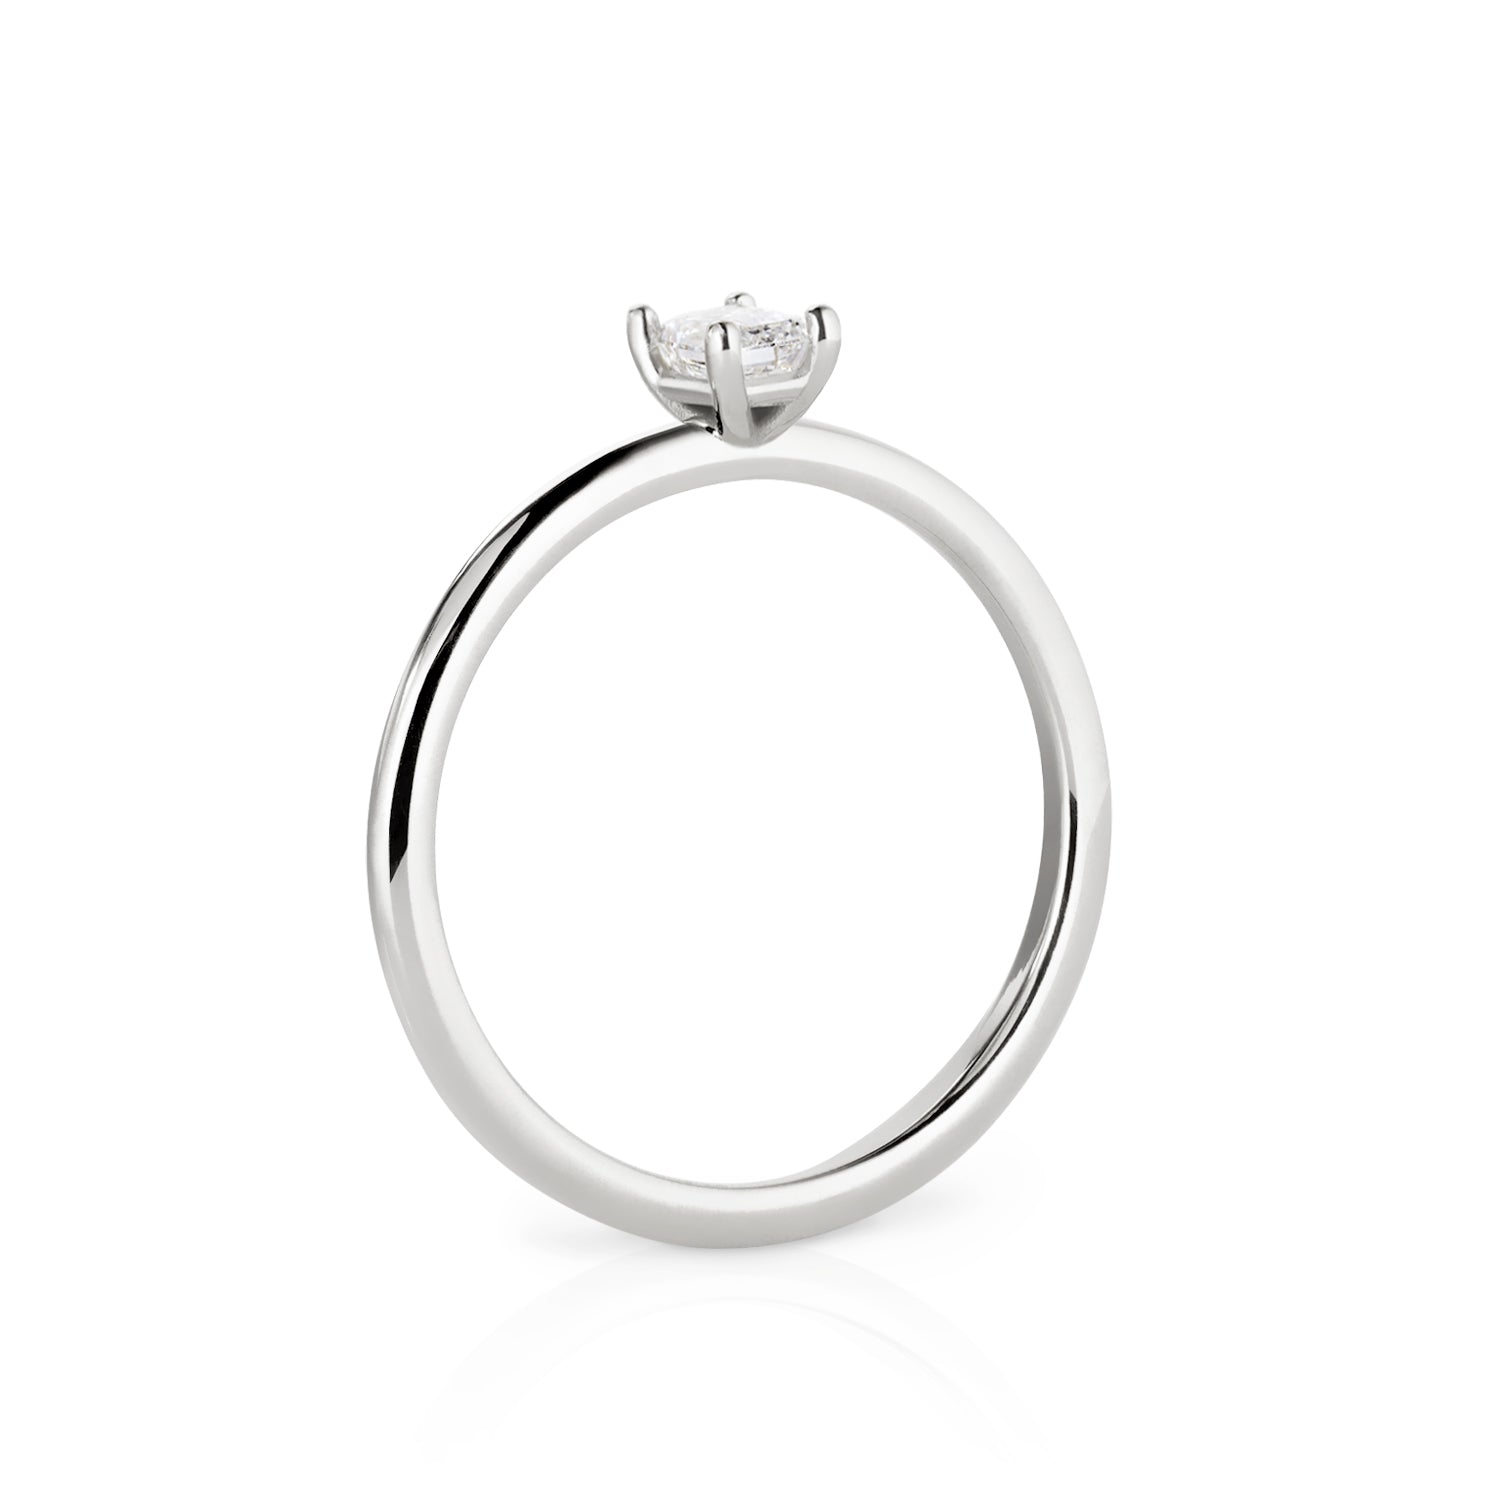 Der Ring Bella ist aus recyceltem Weißgold und Labor gezüchteten Diamanten von unserer Tiny Collection.